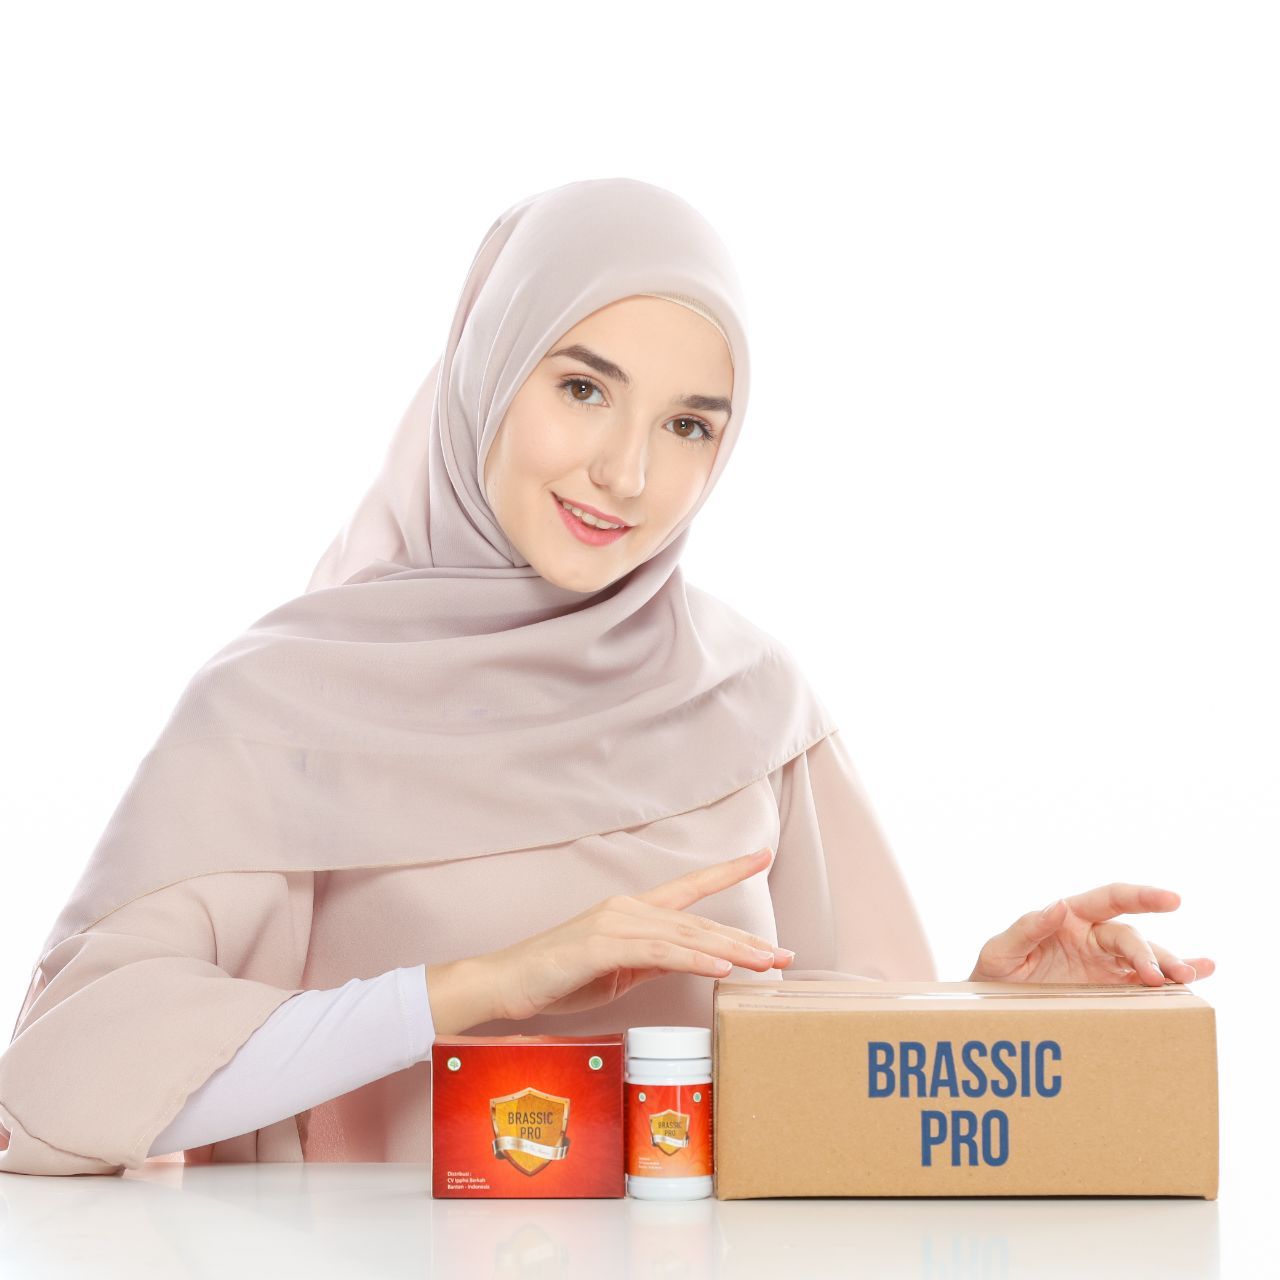 Jual Brassic Pro BP Asli di Bekasi